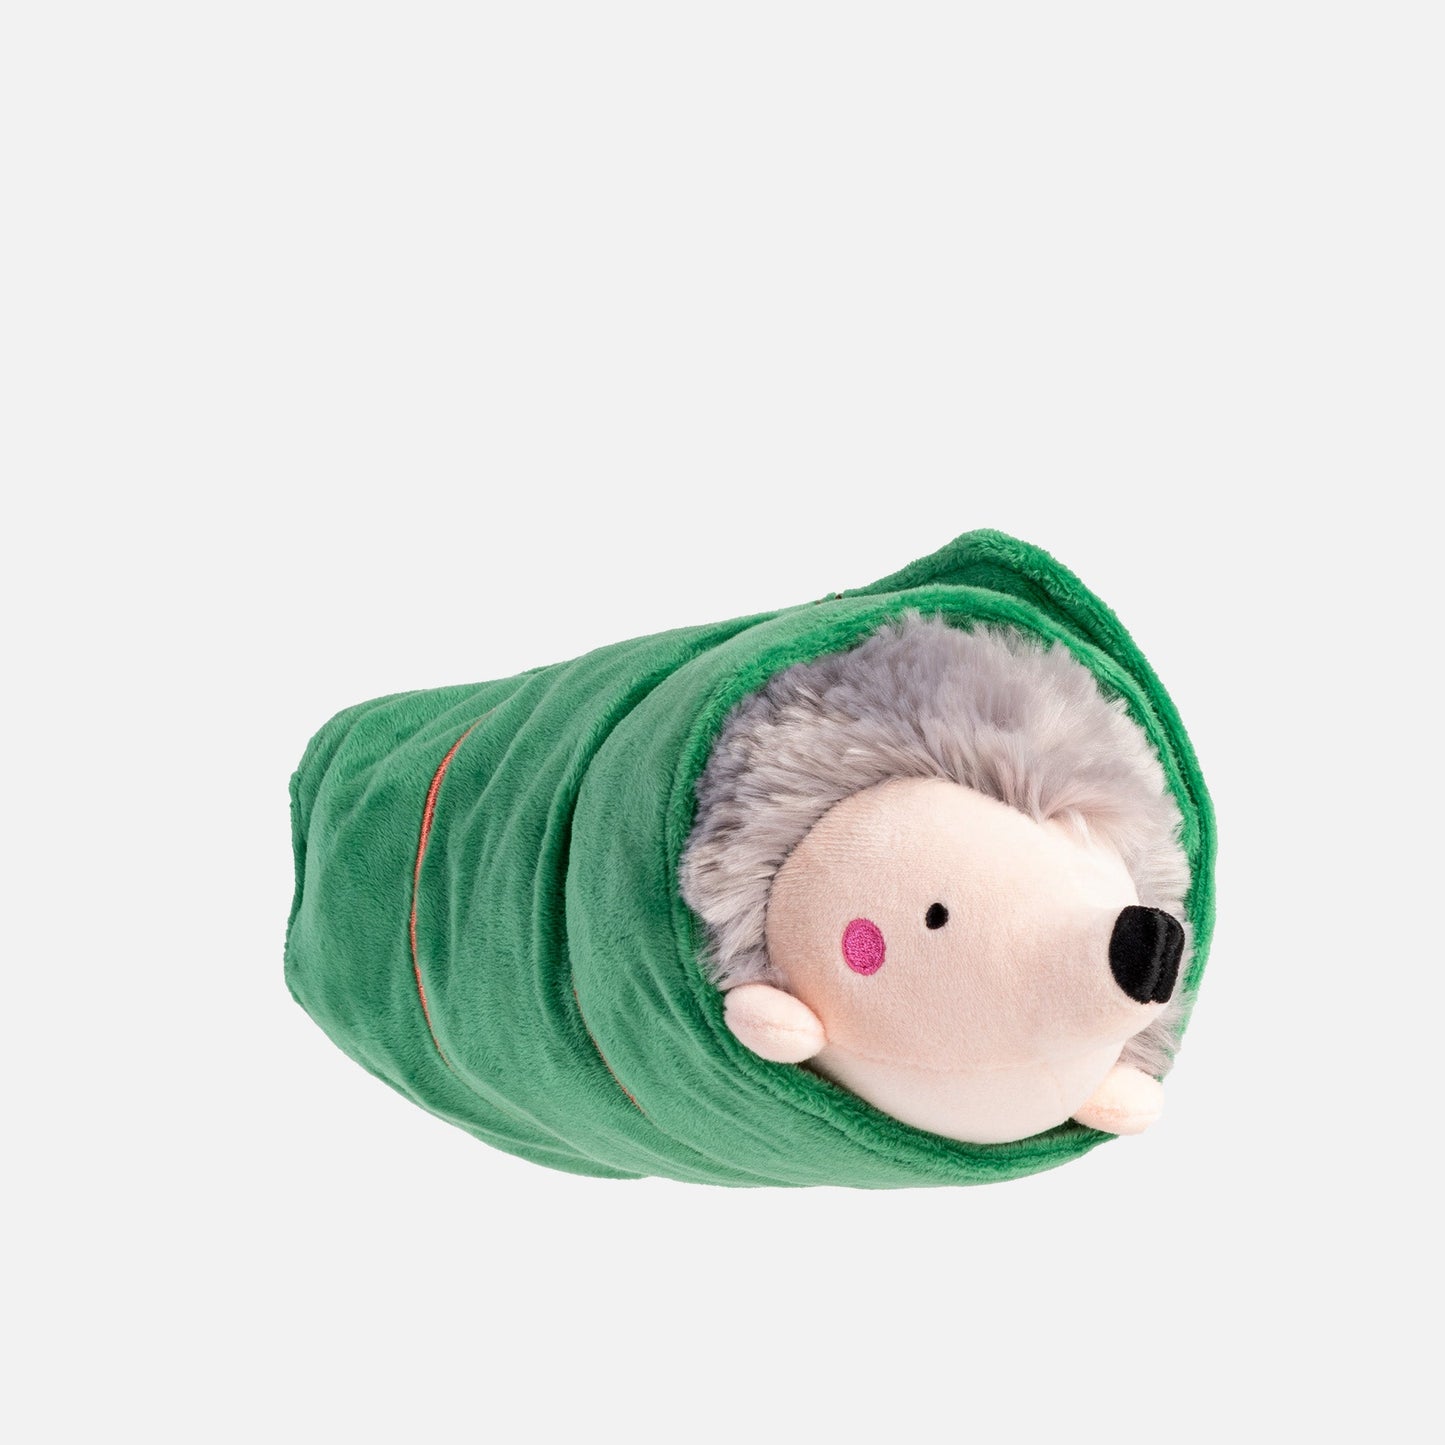 Sleeping Porcupine- Dog Toy